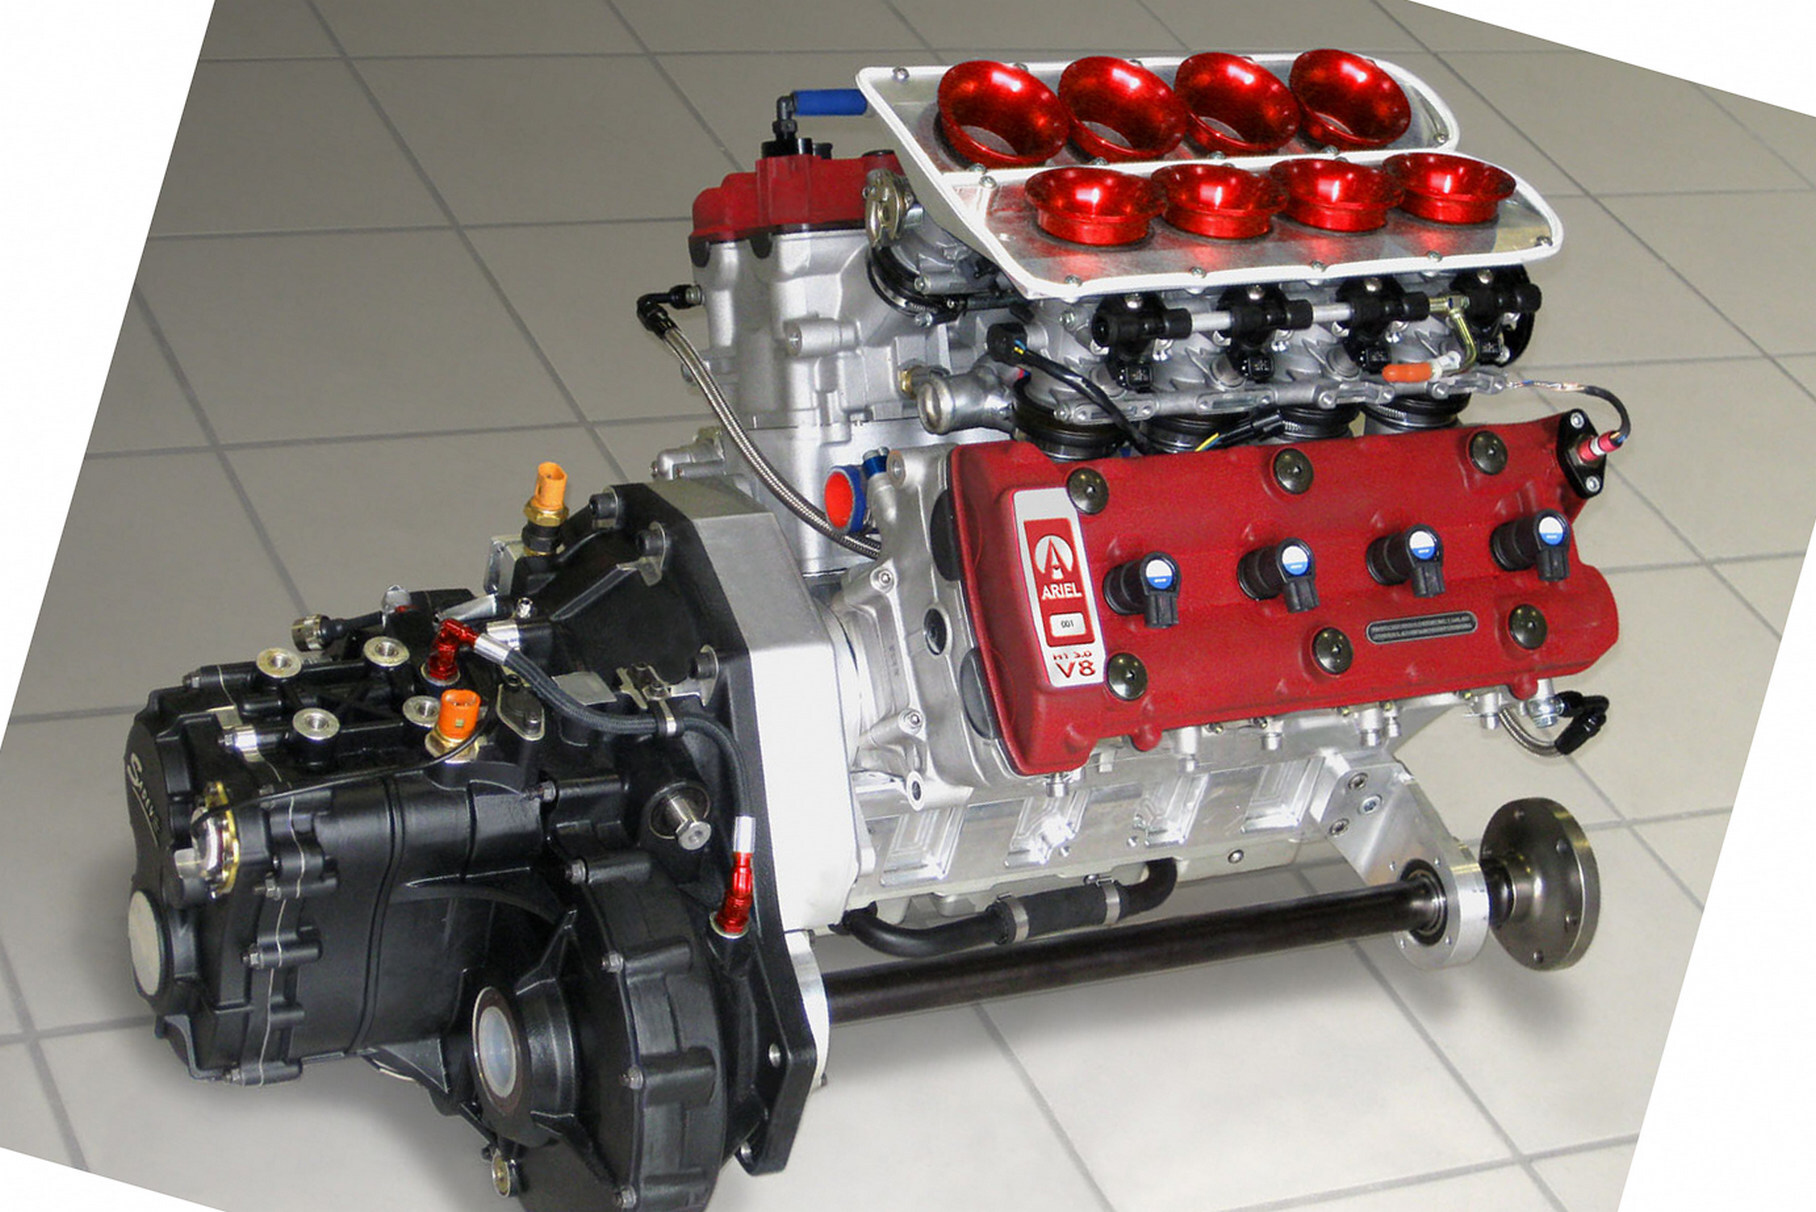 Двигатель H1V8 Джона Хартли c 75-градусным развалом. Здесь показан вариант для поперечной установки для Ariel Atom